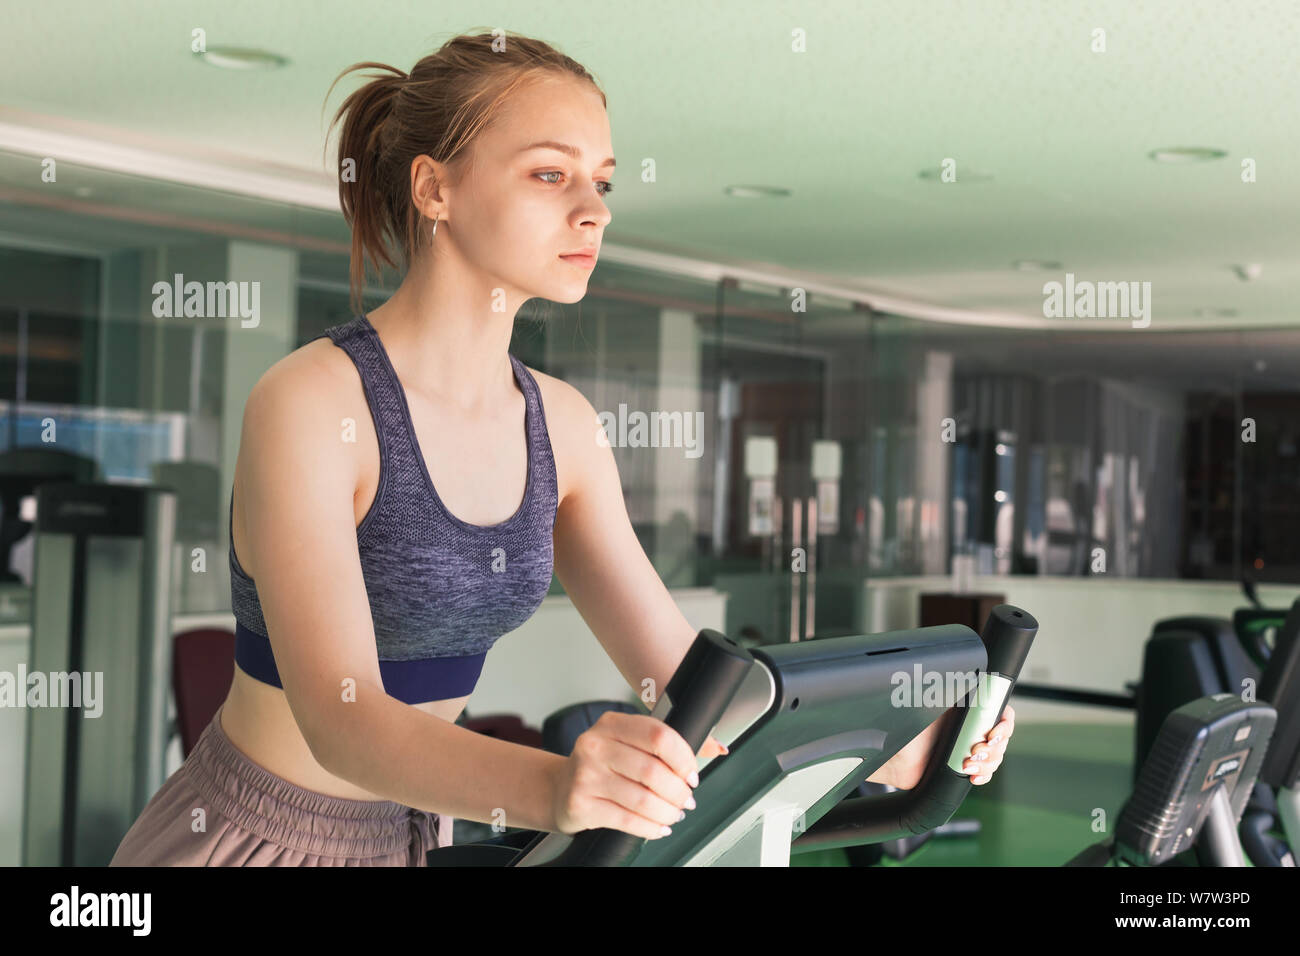 Joven rubia chica deportiva está metida en una bicicleta estacionaria en un gimnasio Foto de stock